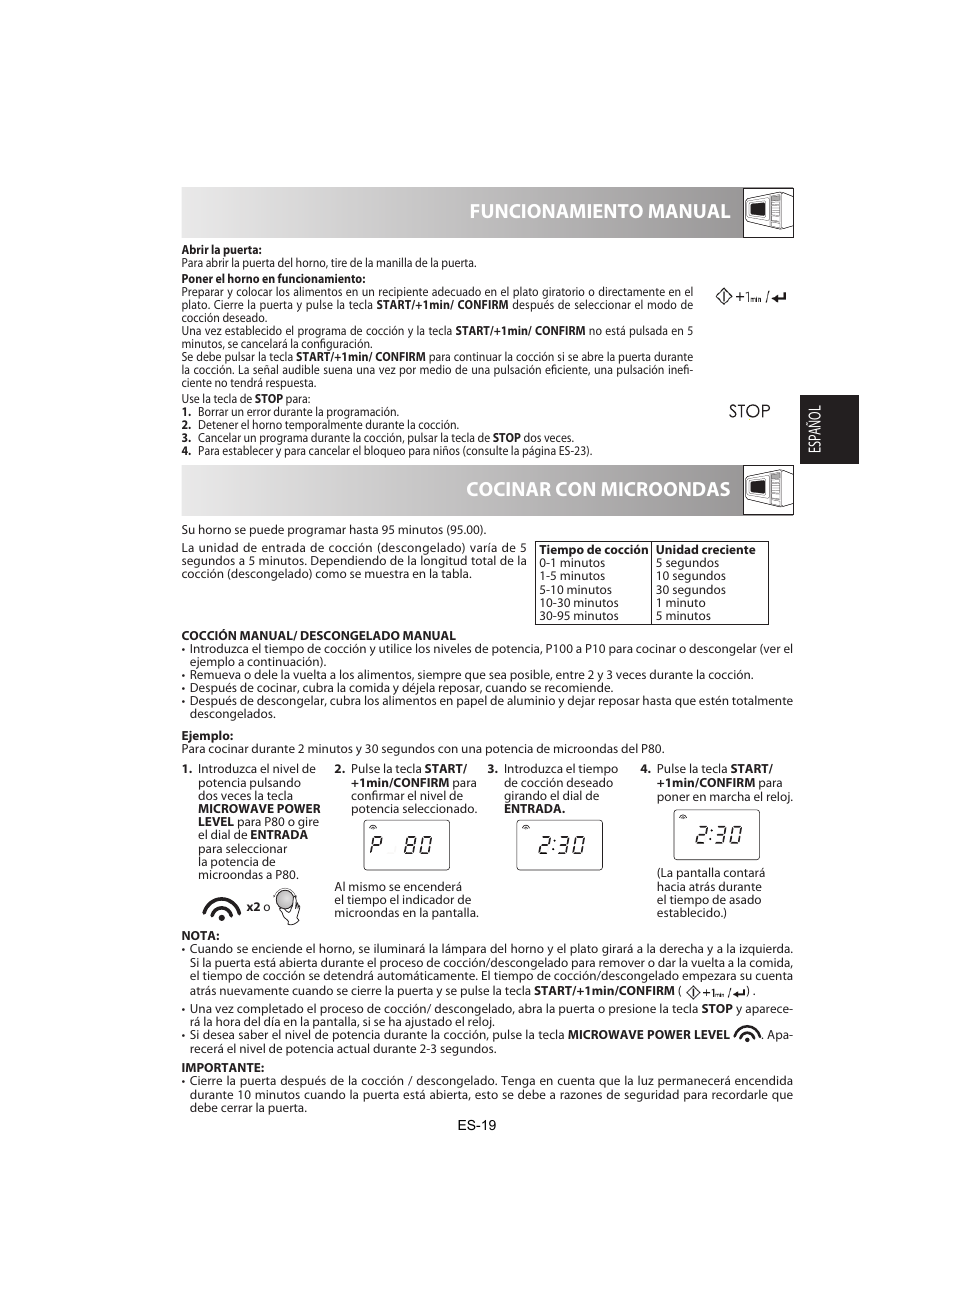 Cocinar con microondas funcionamiento manual | Sharp R-842INE User Manual | Page 49 / 312